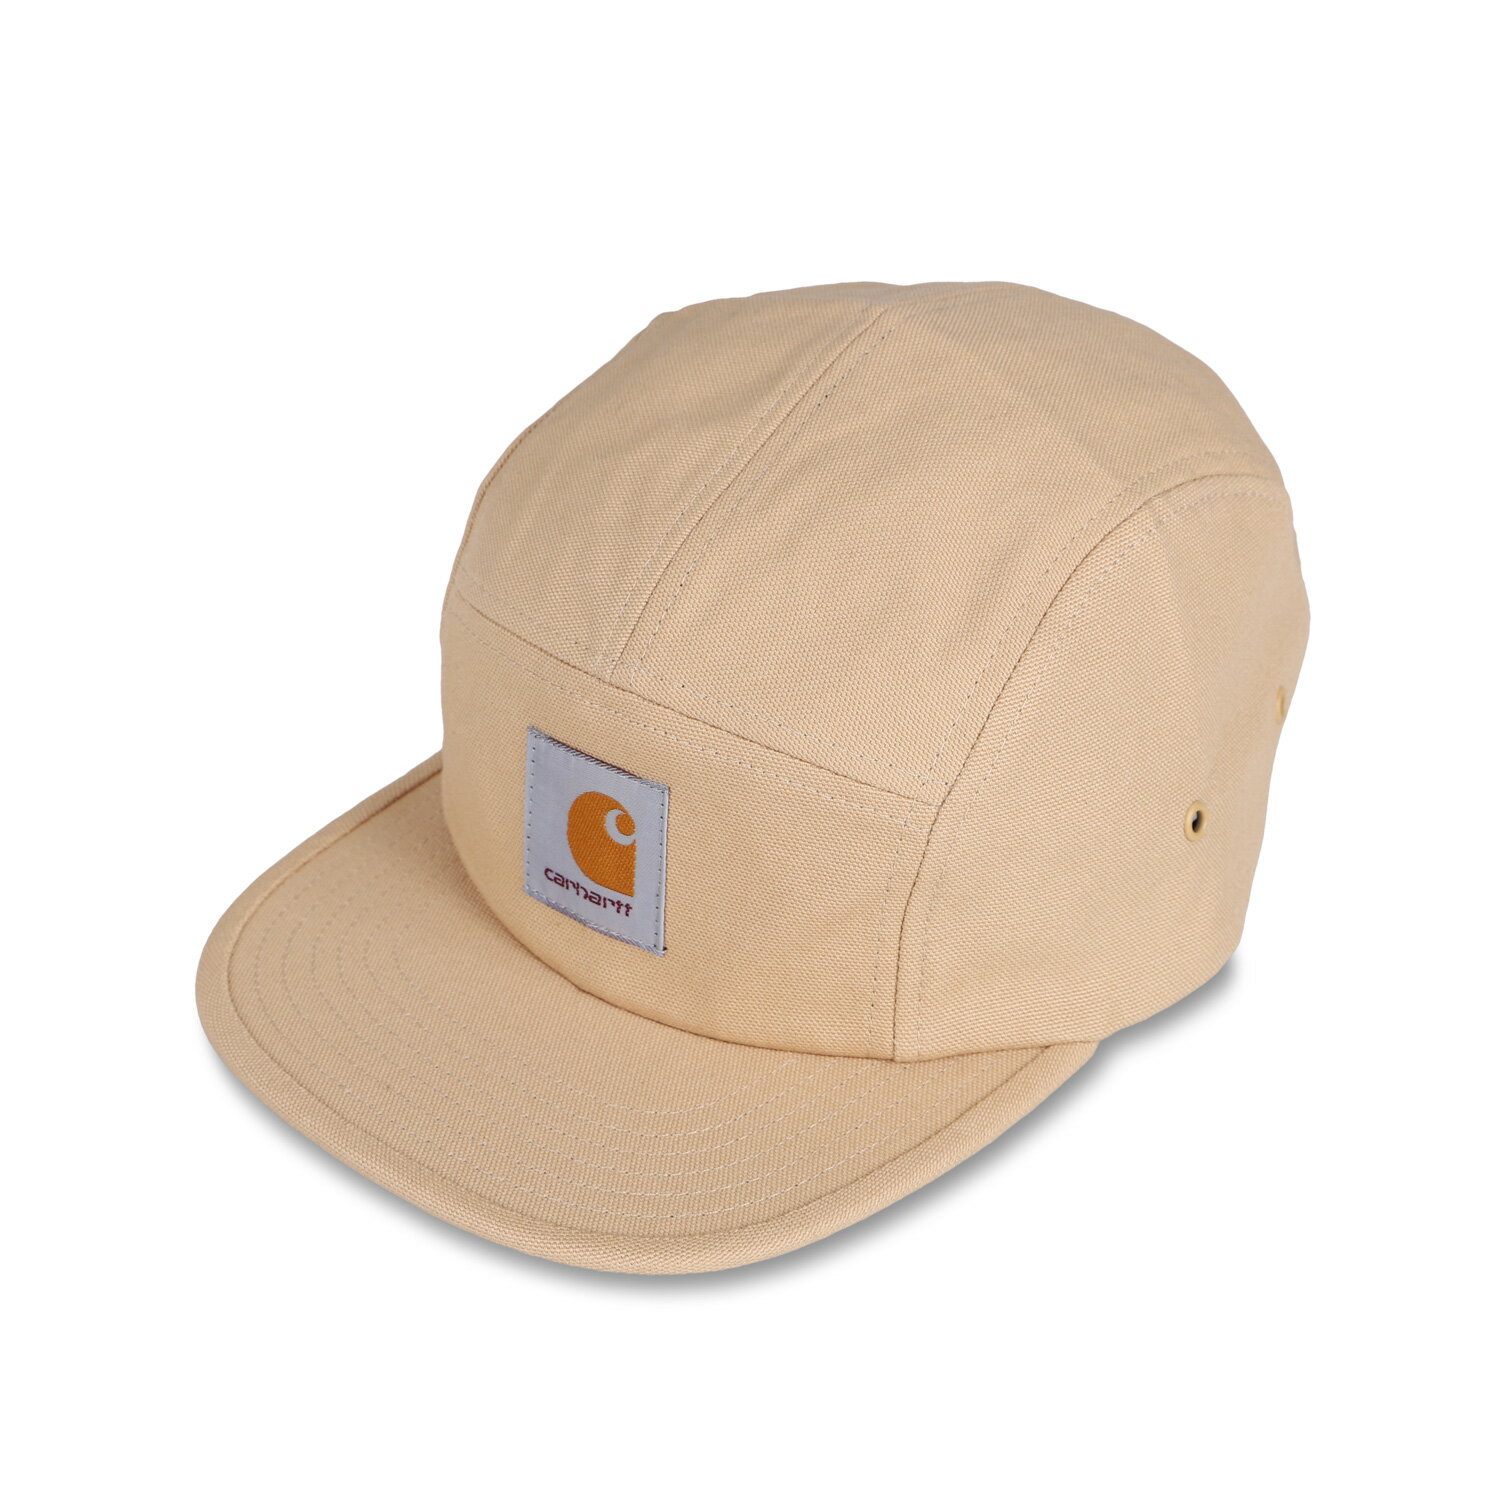 カーハート  帽子 メンズ carhartt WIP BACKLEY CAP カーハート キャップ 帽子 メンズ レディース ブラック ホワイト ダーク ネイビー ブラウン 黒 白 I016607